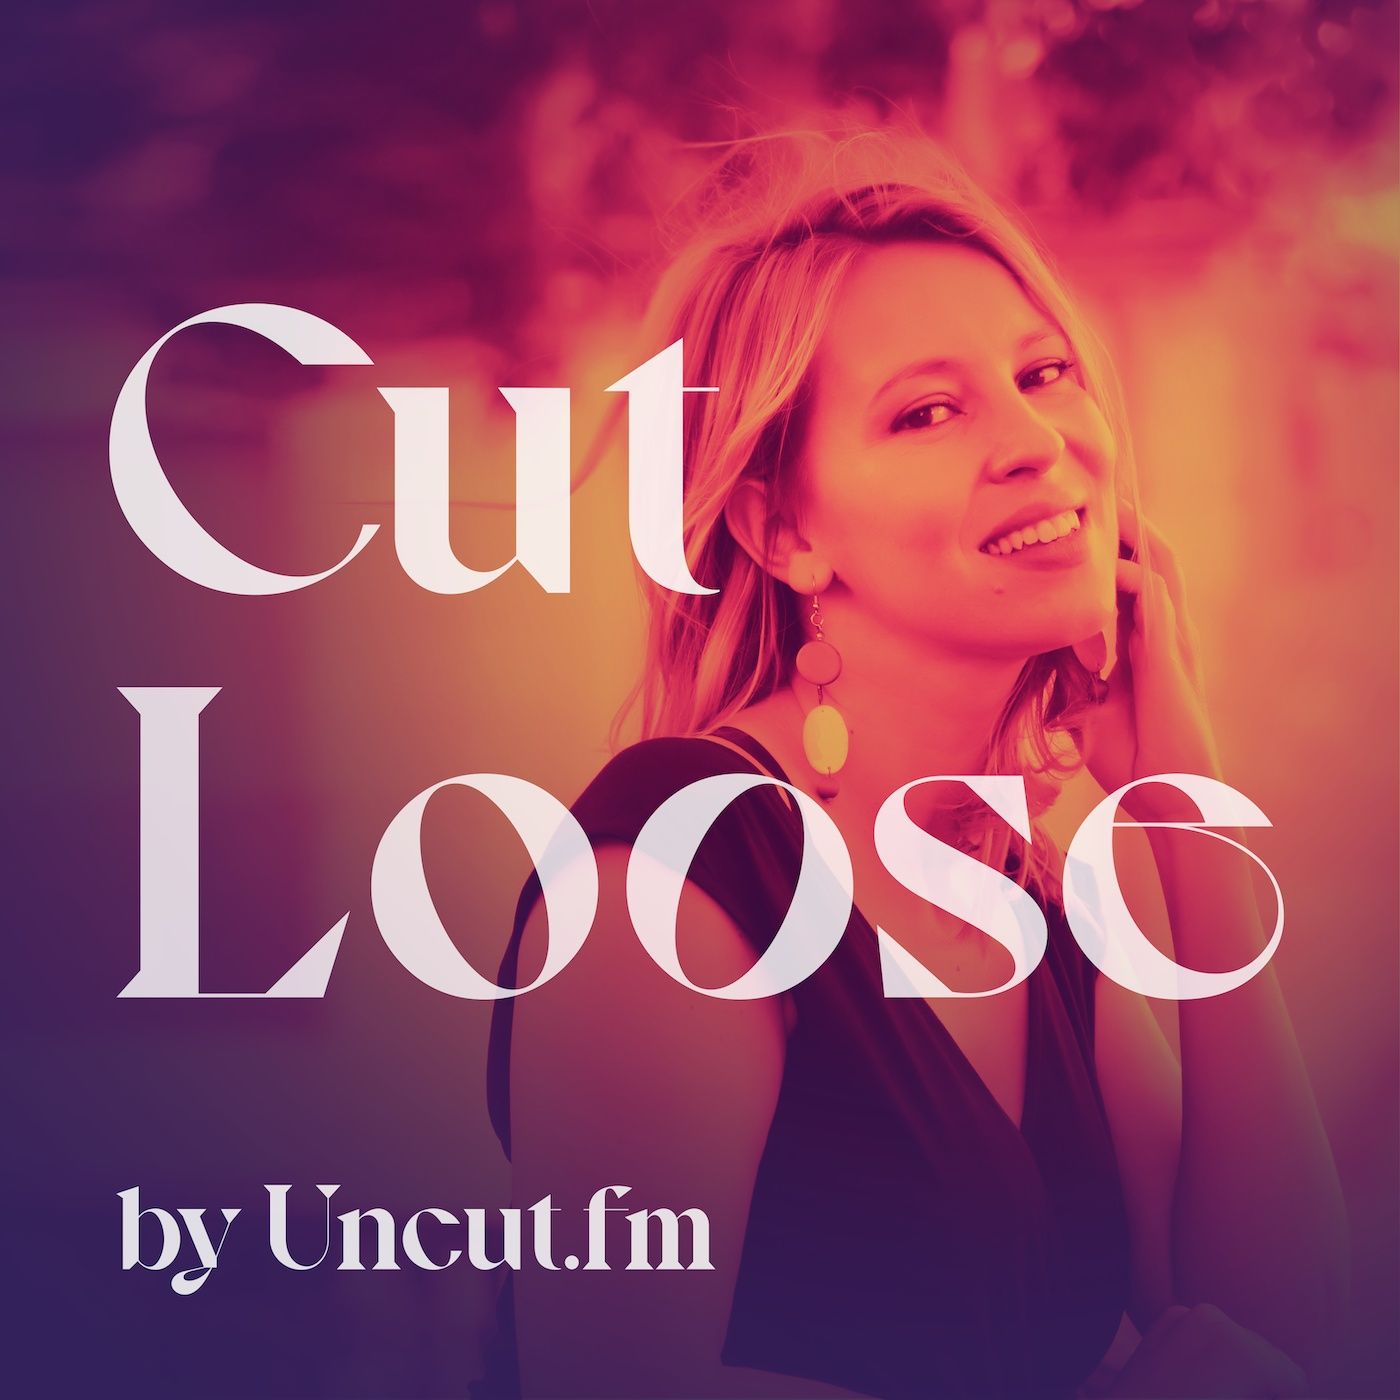 “Cut Loose” by Uncut.fm